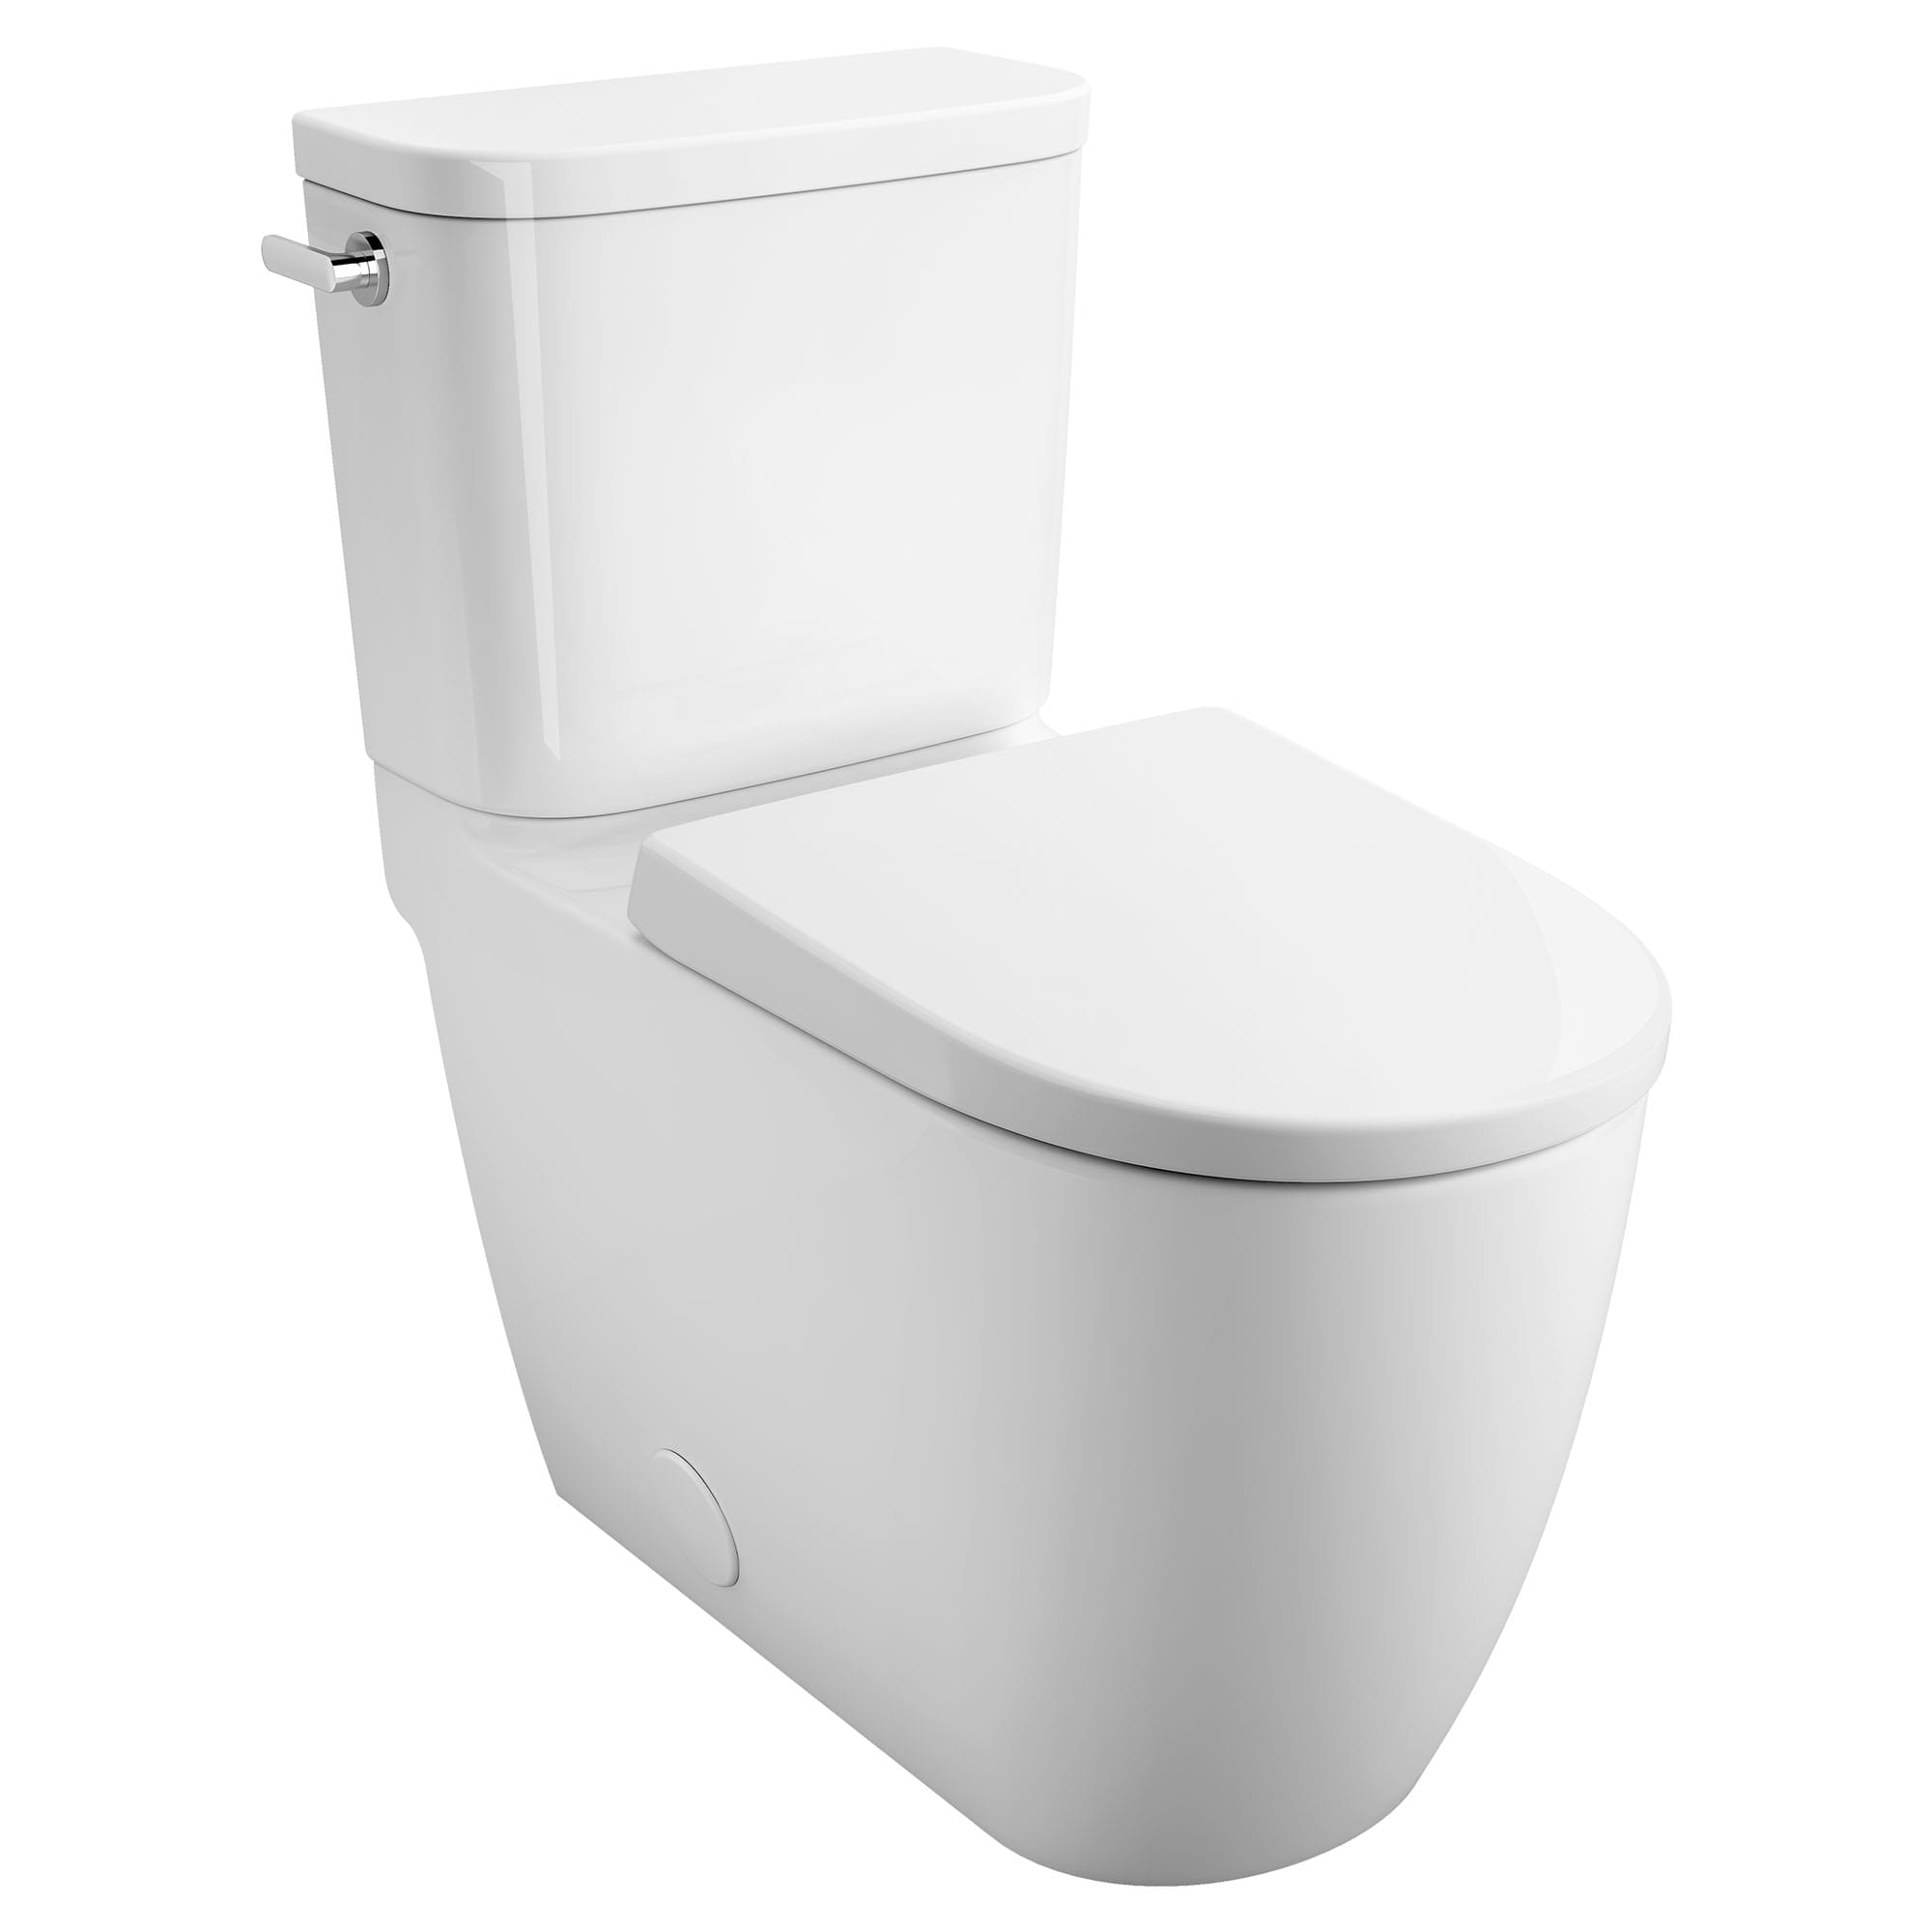 Toilette allongée en deux pièces, Hauteur idéale avec chasse double et siège inclus, 4,8 lpc (1,28 gpc)